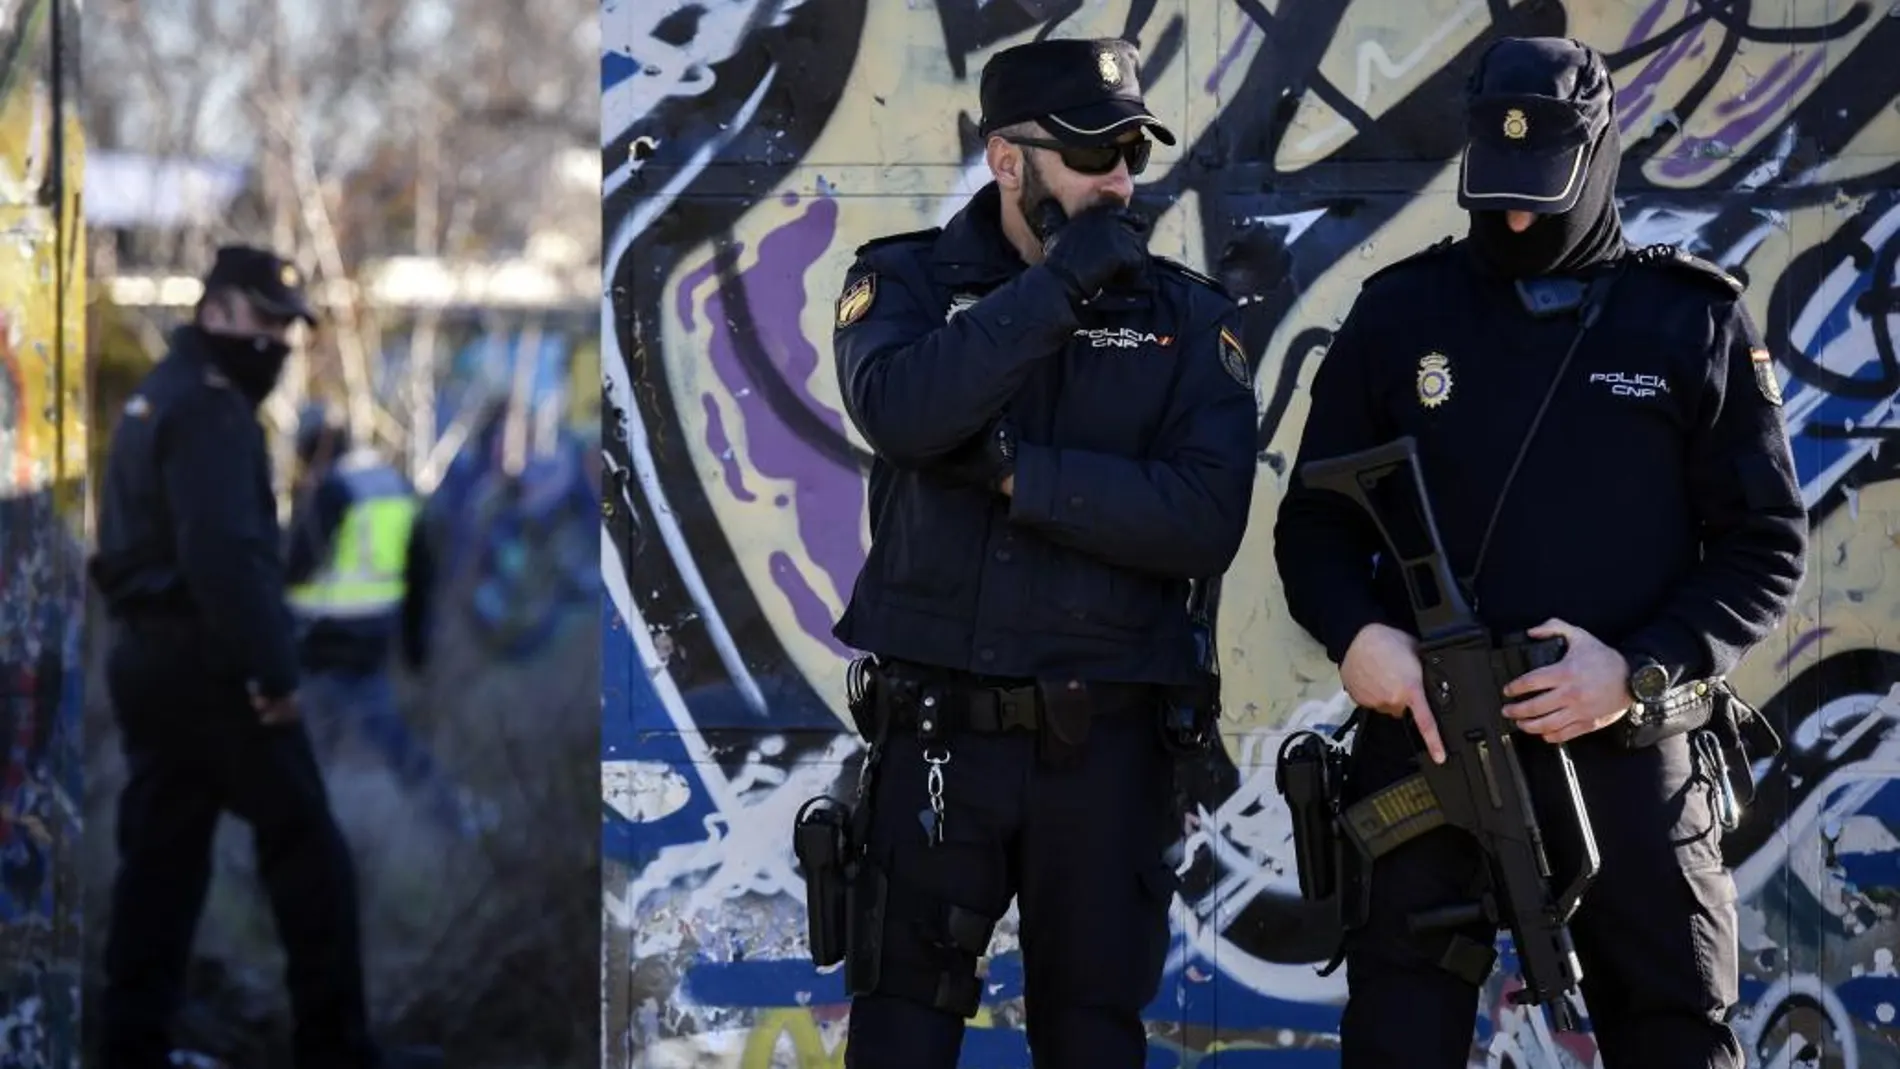 Agentes de la Policía Nacional permanecen en las inmediaciones de la cabaña situada en el barrio de Vallecas cerca de la autovía de Valencia (A3) que empleaban los dos jóvenes detenidos en Madrid como presuntos yihadistas